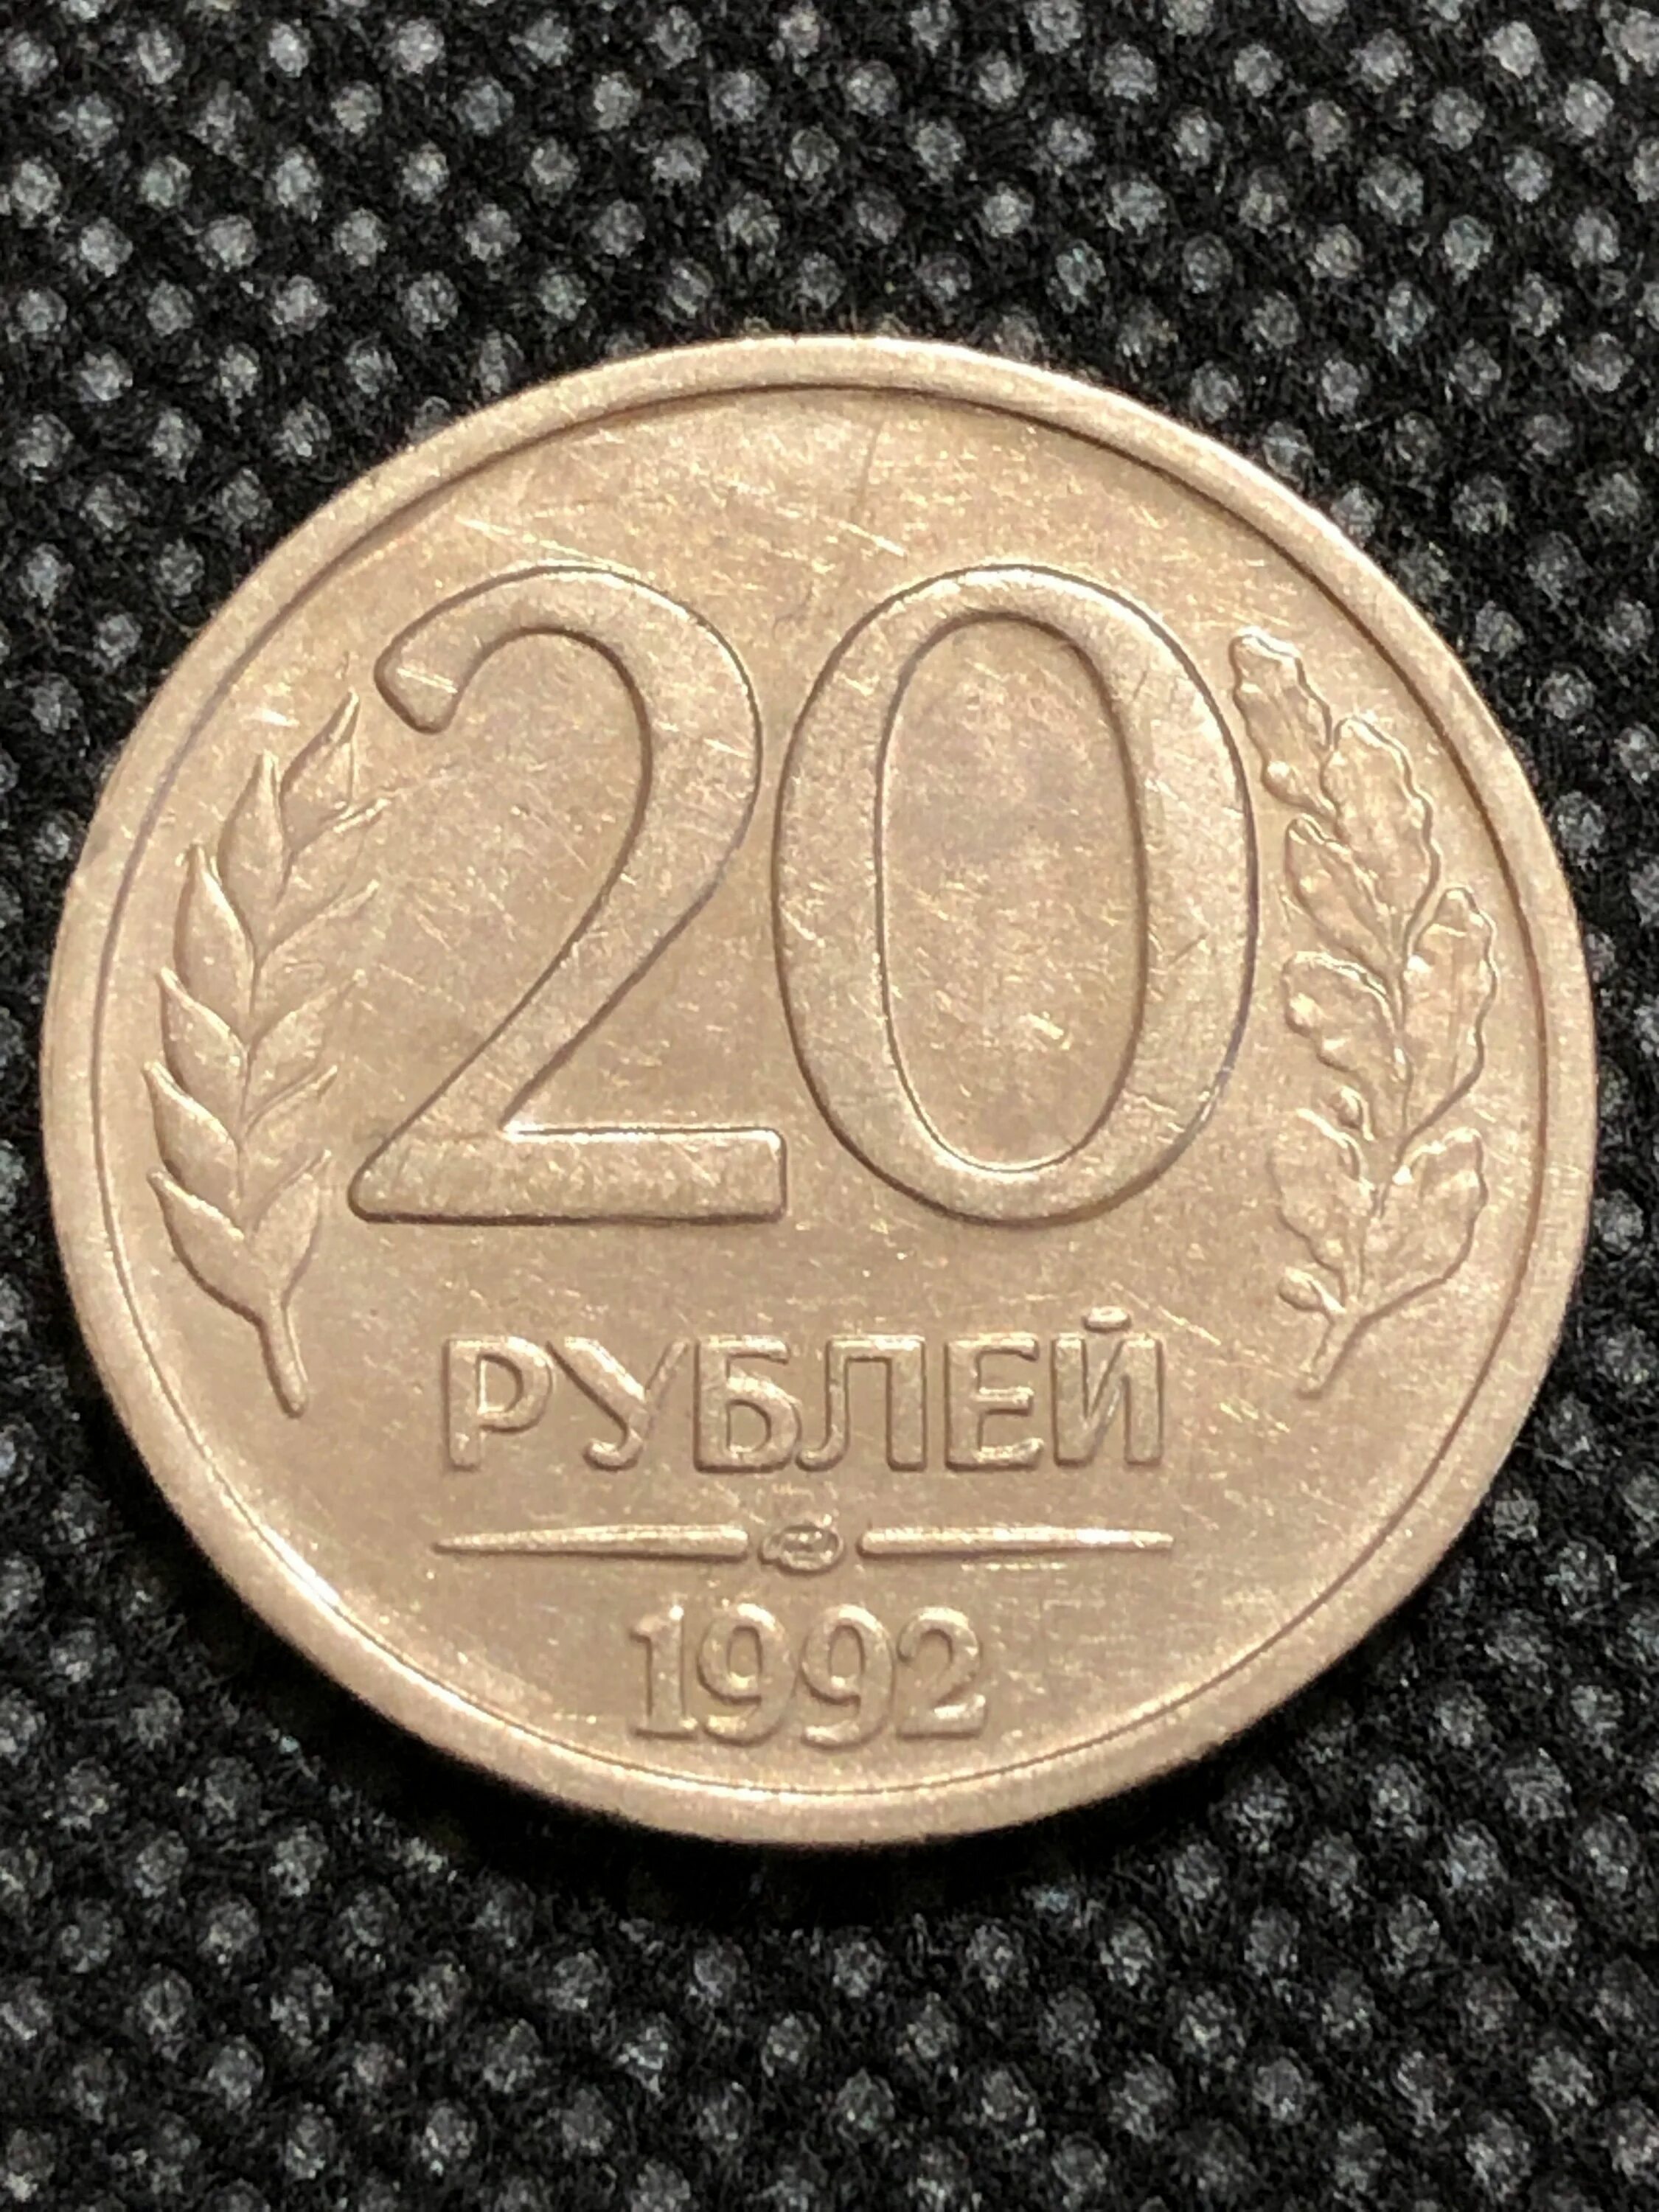 5 рублей 10 копеек. 20 Копеек 1991 года. 15 Копеек 1991 года. 20 Коп 1991 года л. 20 Лет советскому Союзу монета.